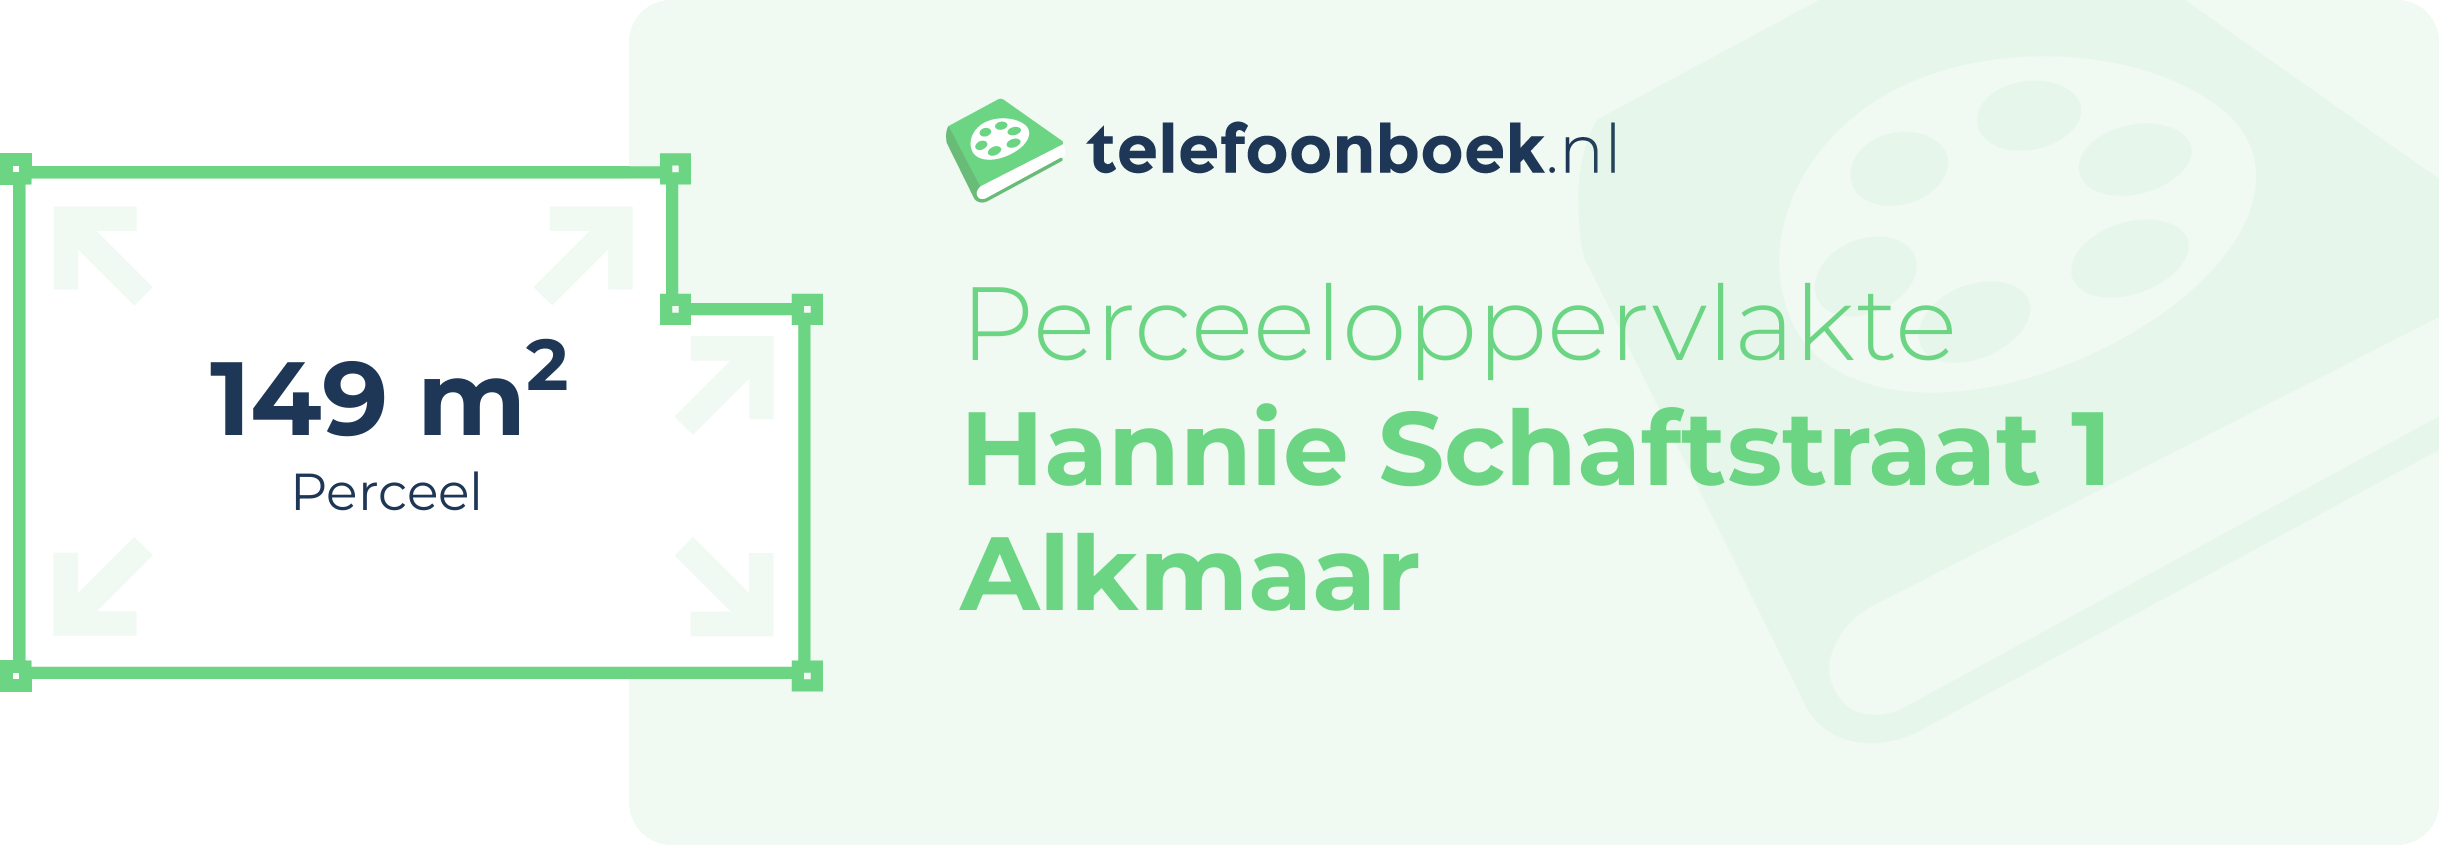 Perceeloppervlakte Hannie Schaftstraat 1 Alkmaar